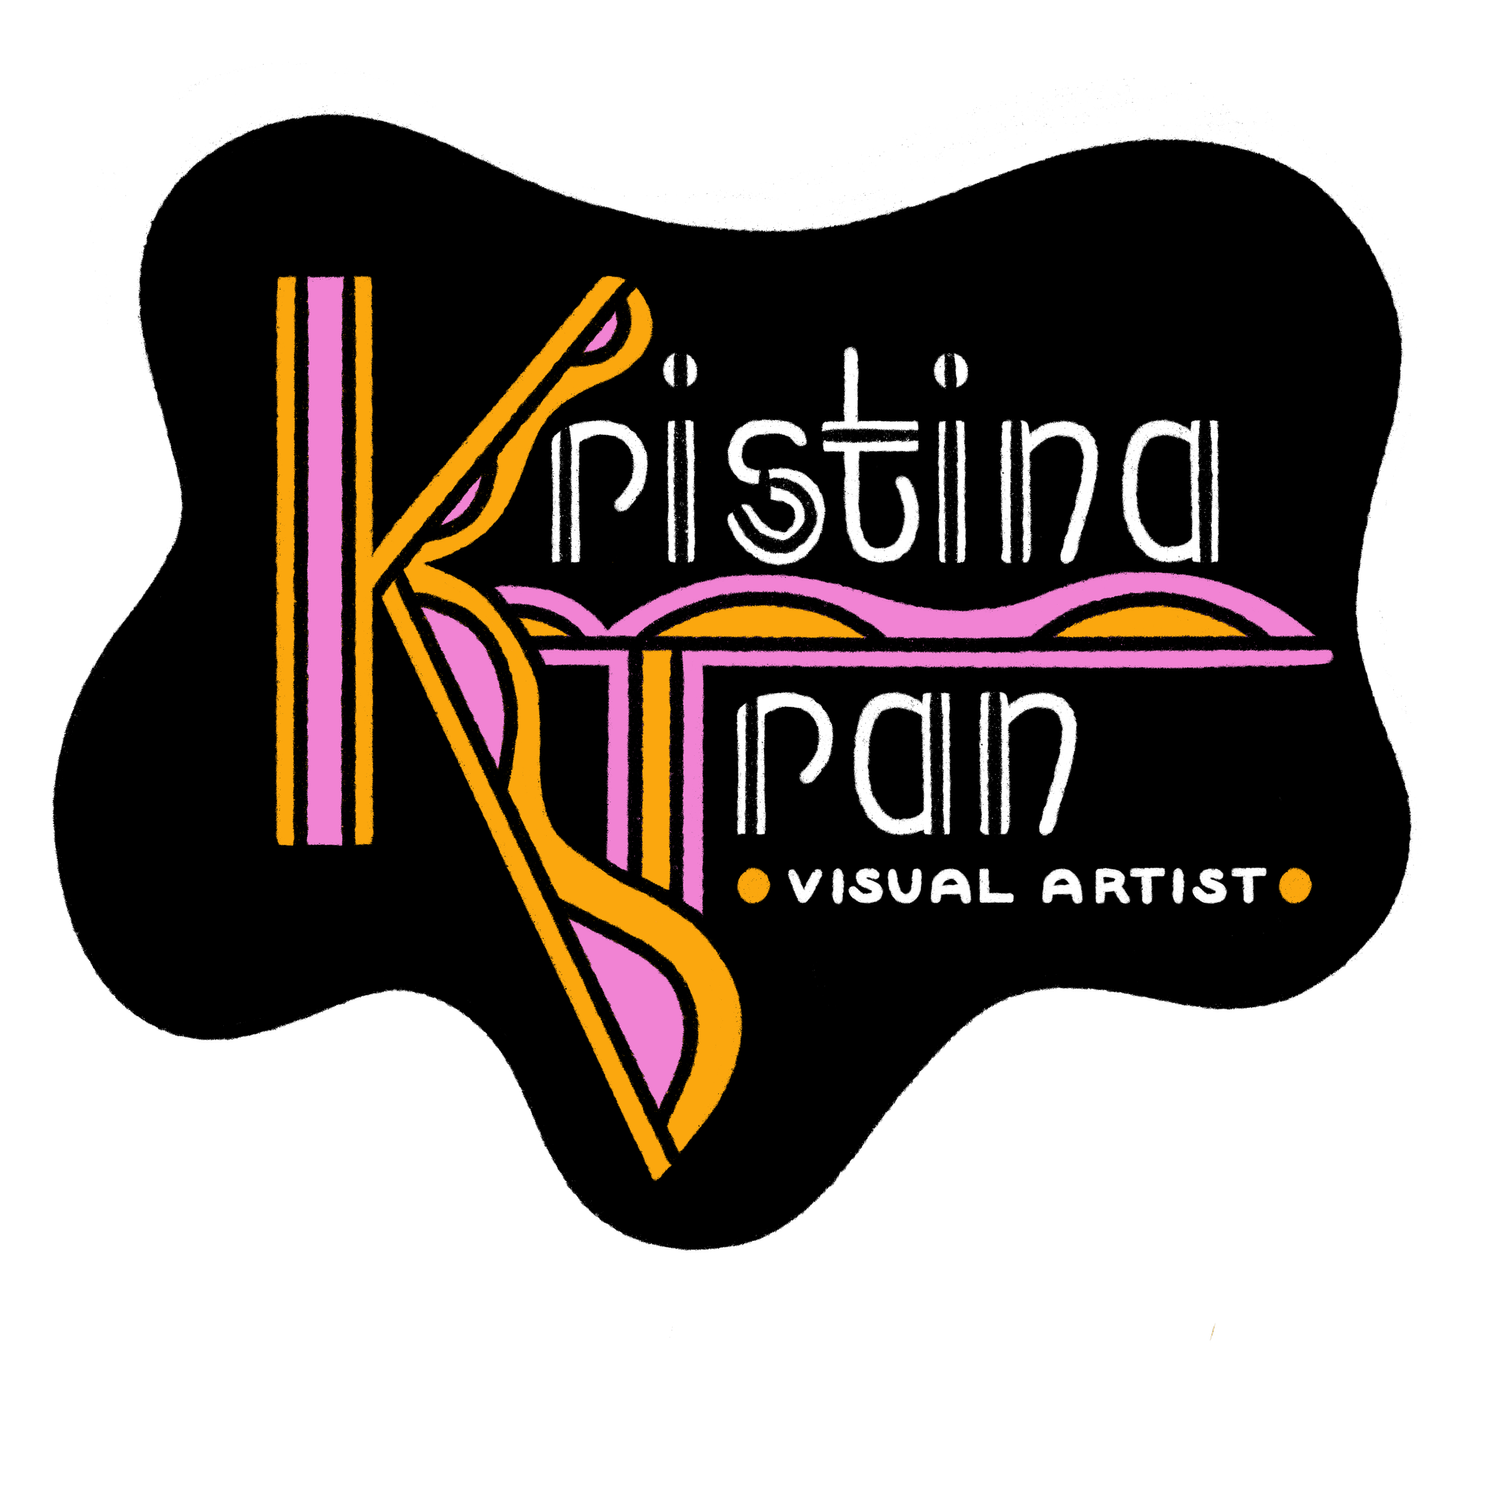 Kristina Tran Art